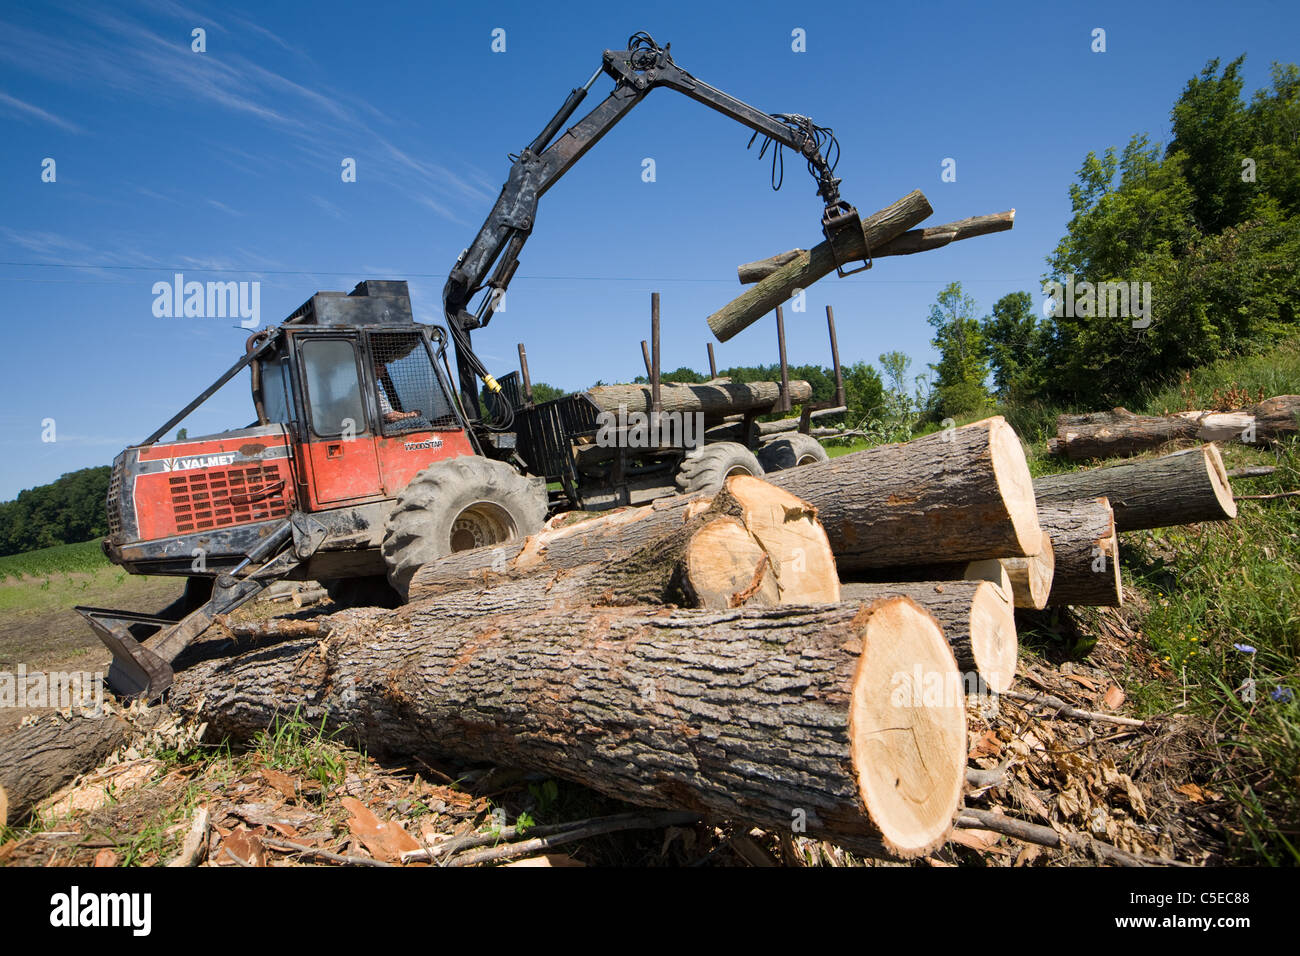 Estamp vuelve a apostar por la madera con Timber y Forest